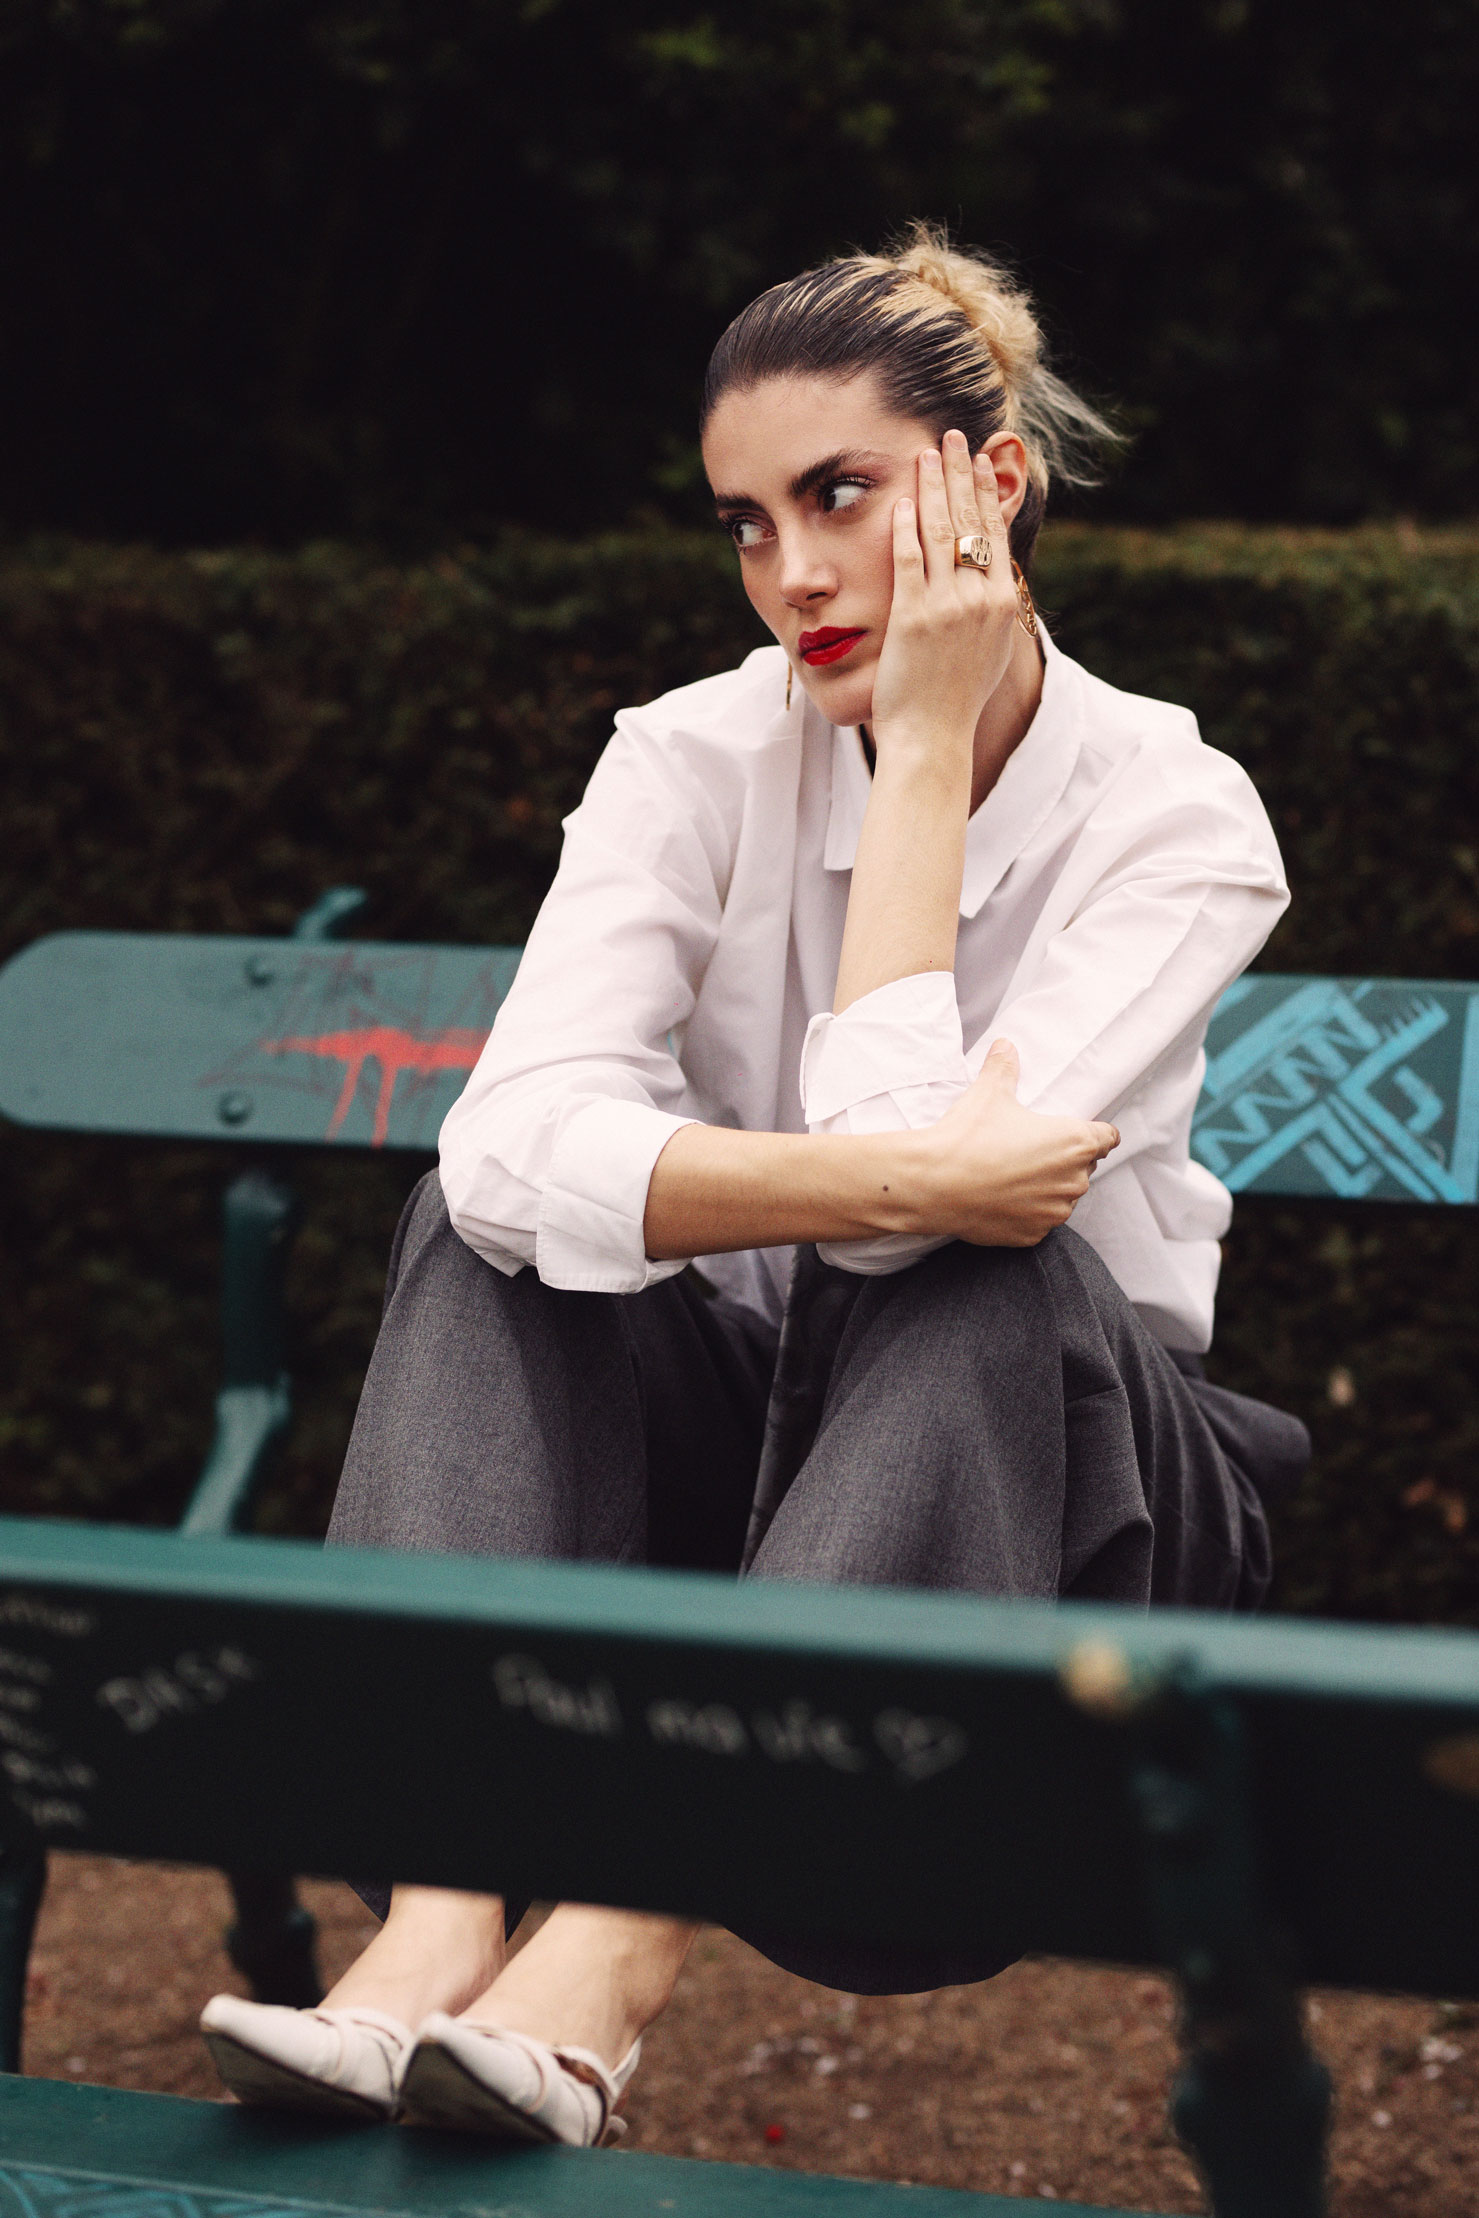 Portrait mode d'une mannequin sur un banc